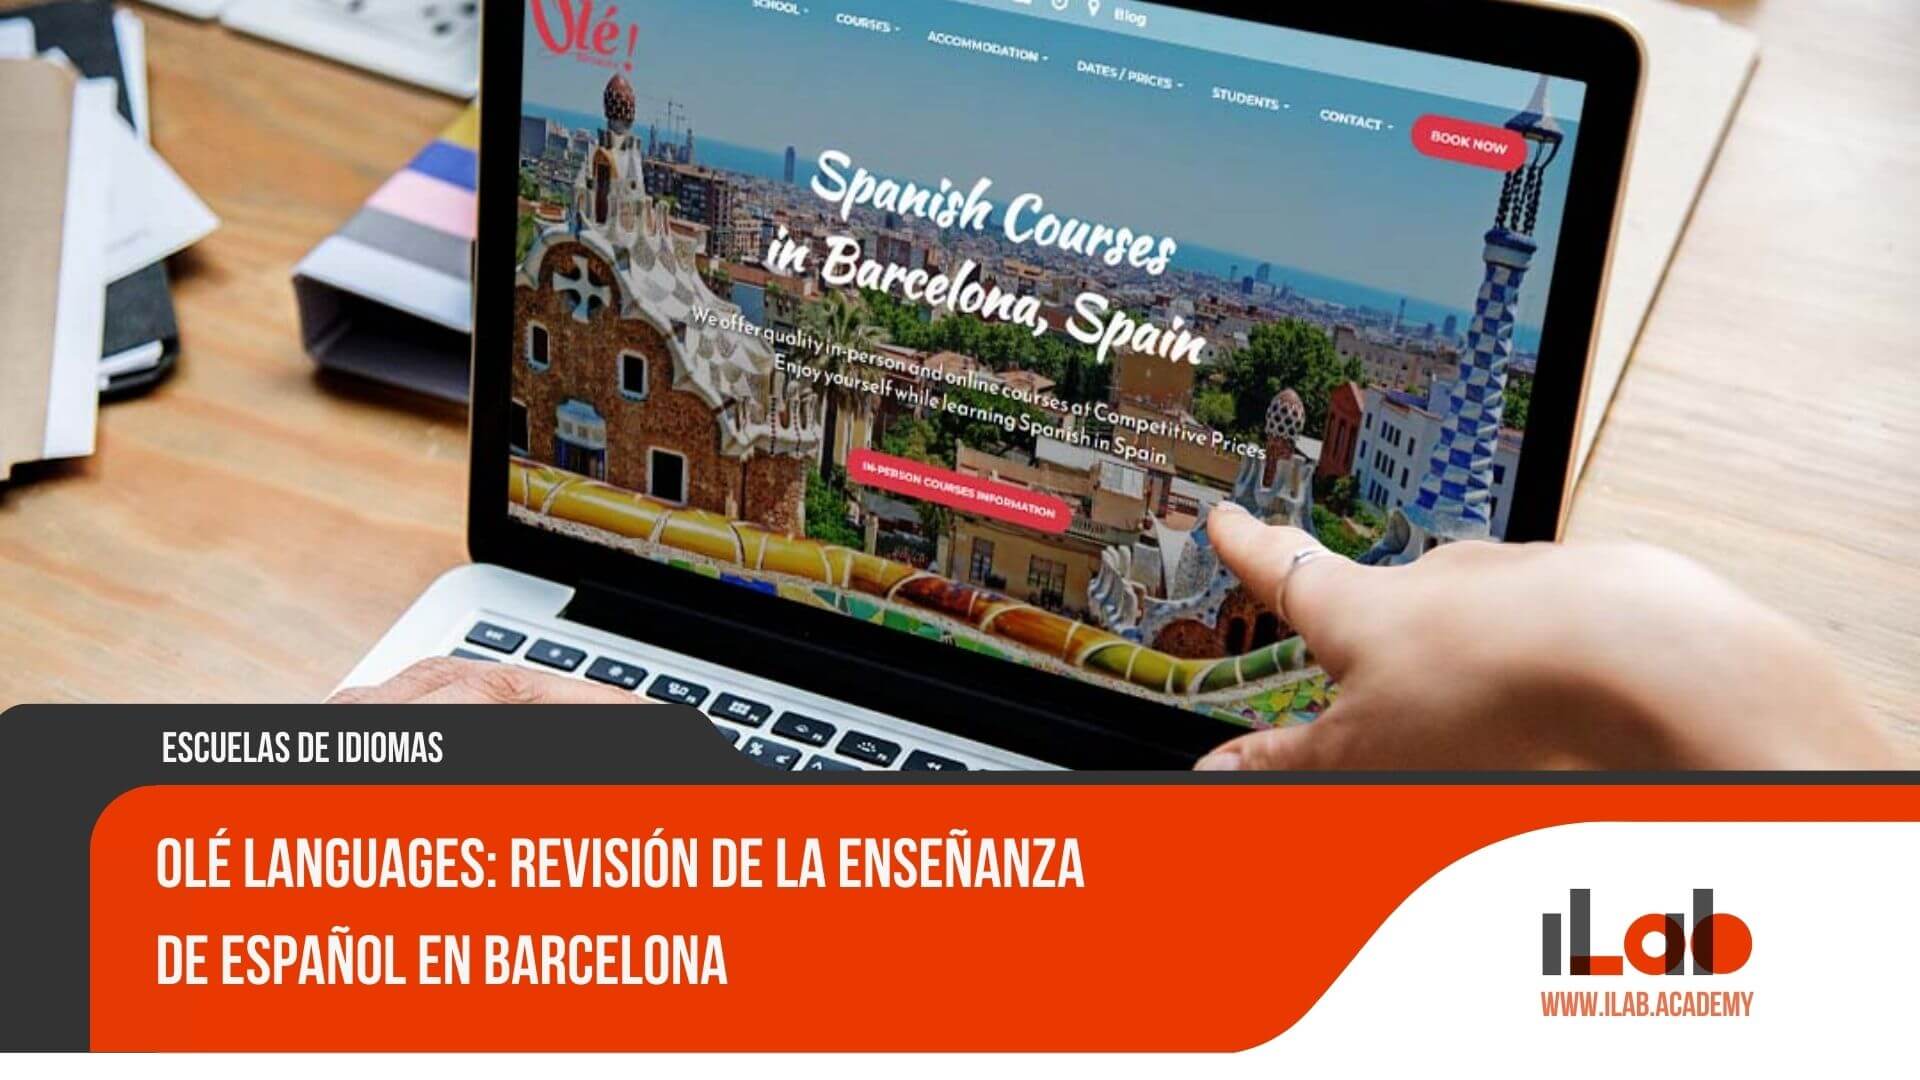 Olé Languages: Revisión de la enseñanza de español en Barcelona